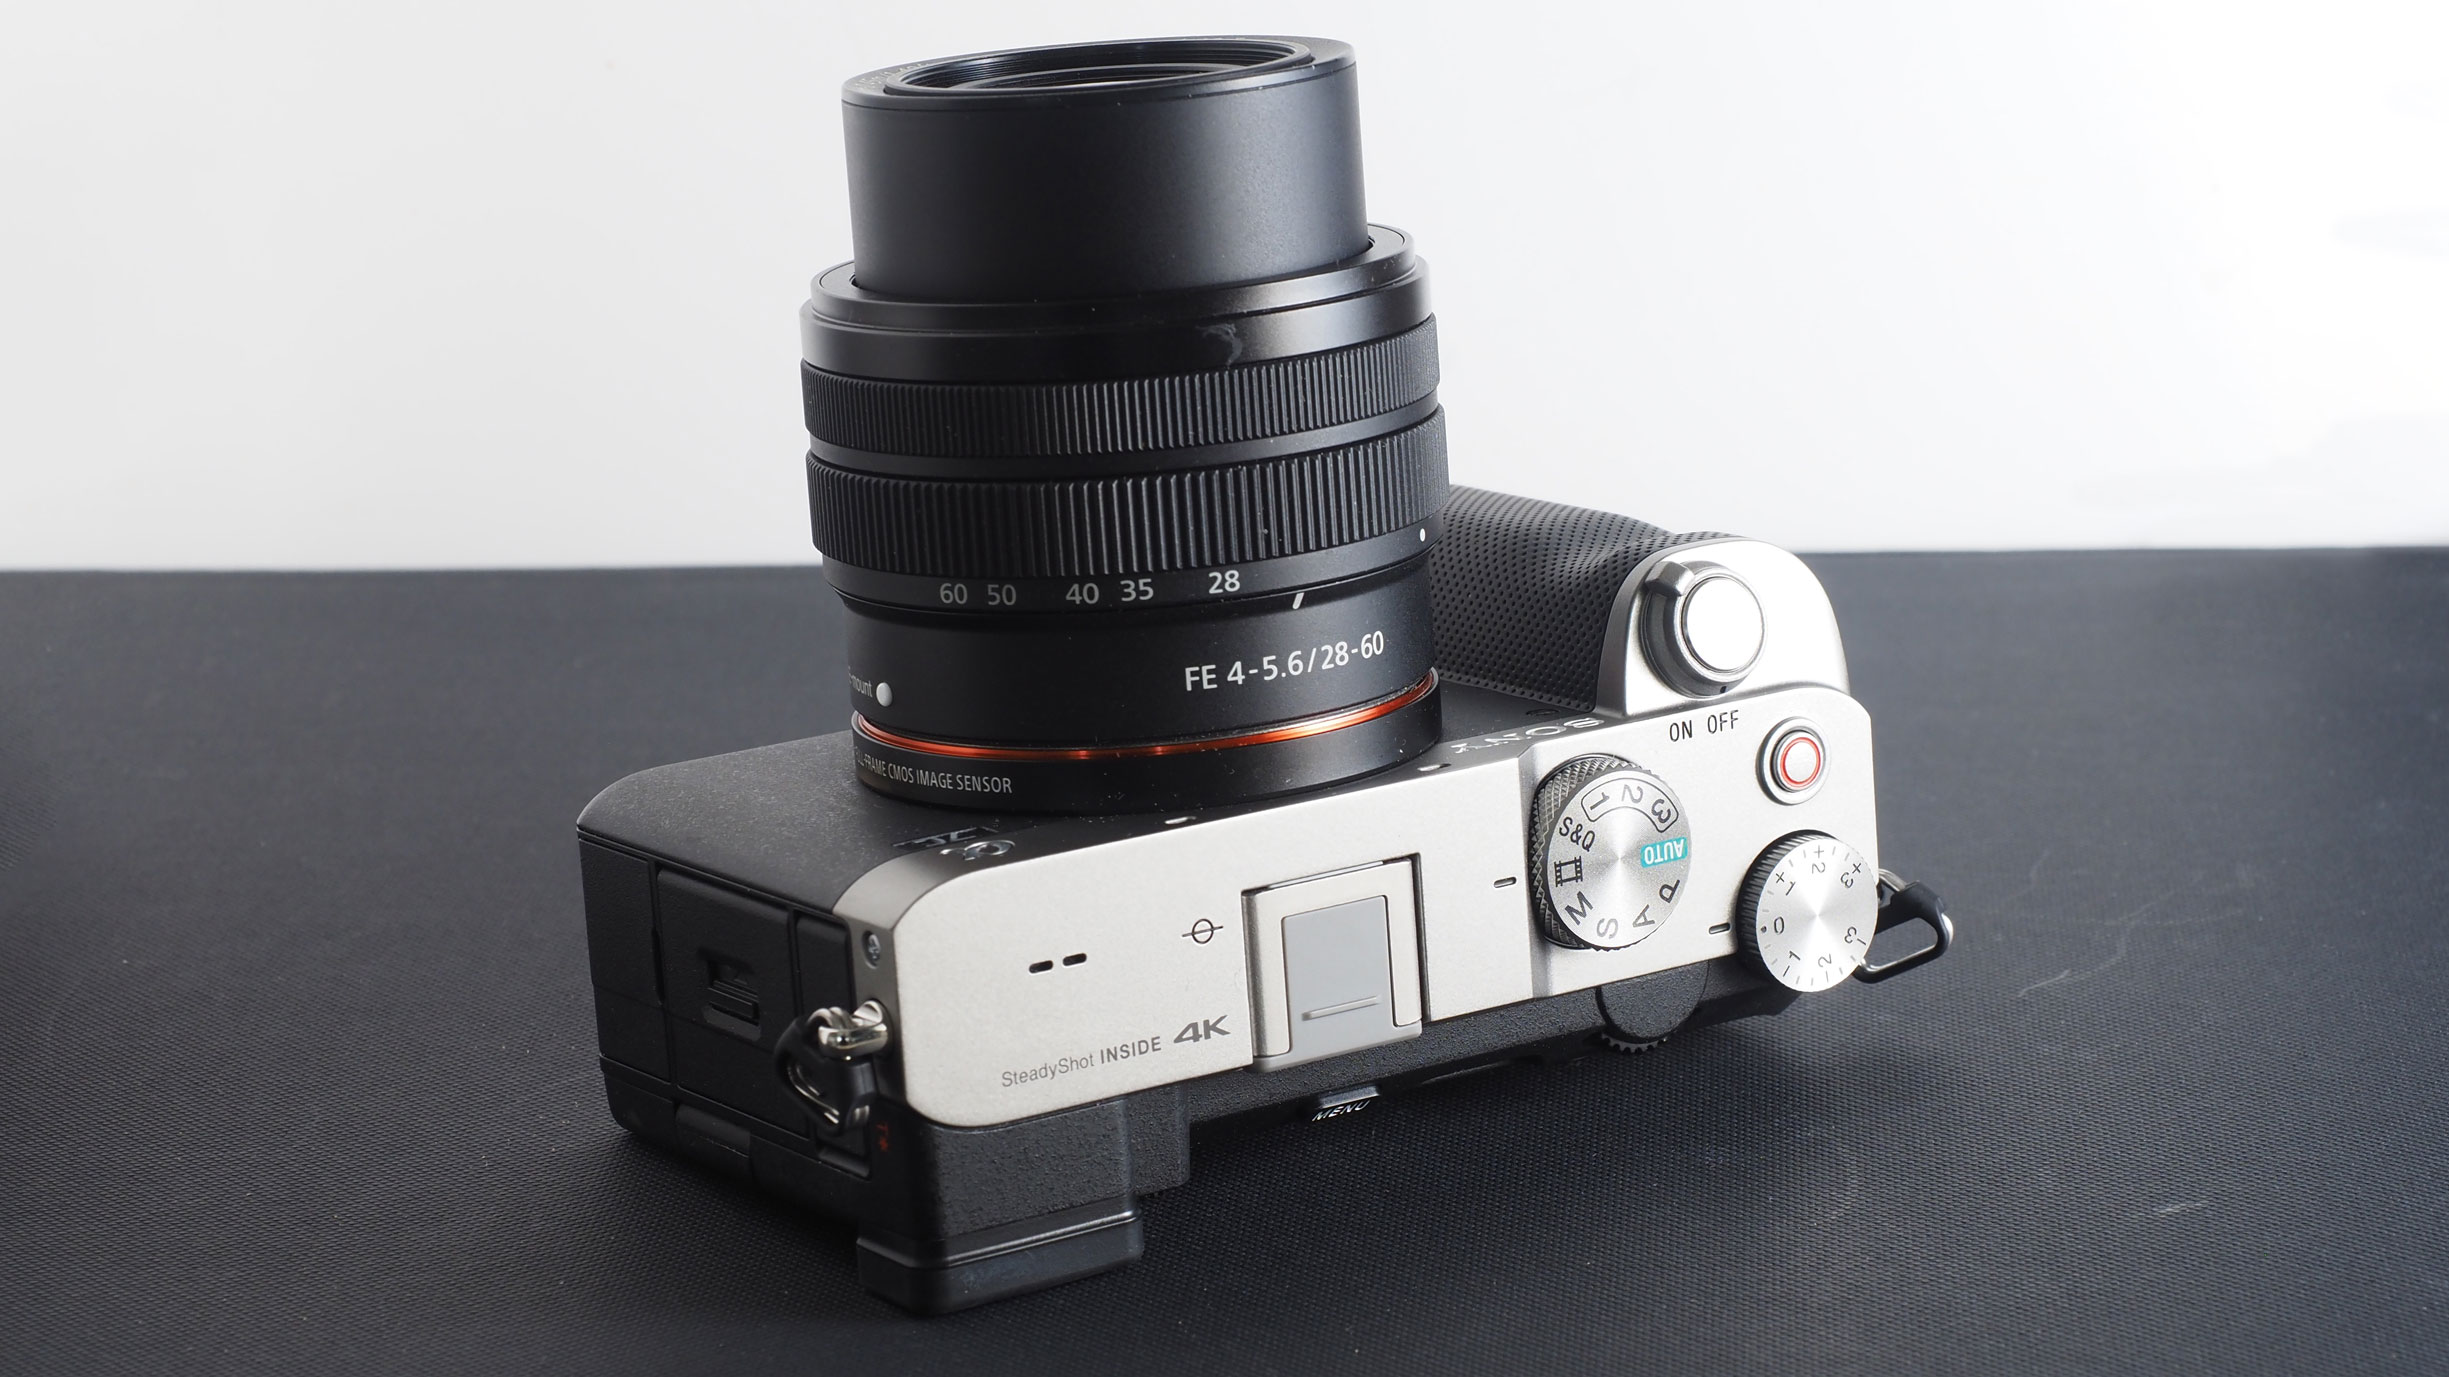 Best Sony lenses: Sony FE 28-60mm f/4-5.6